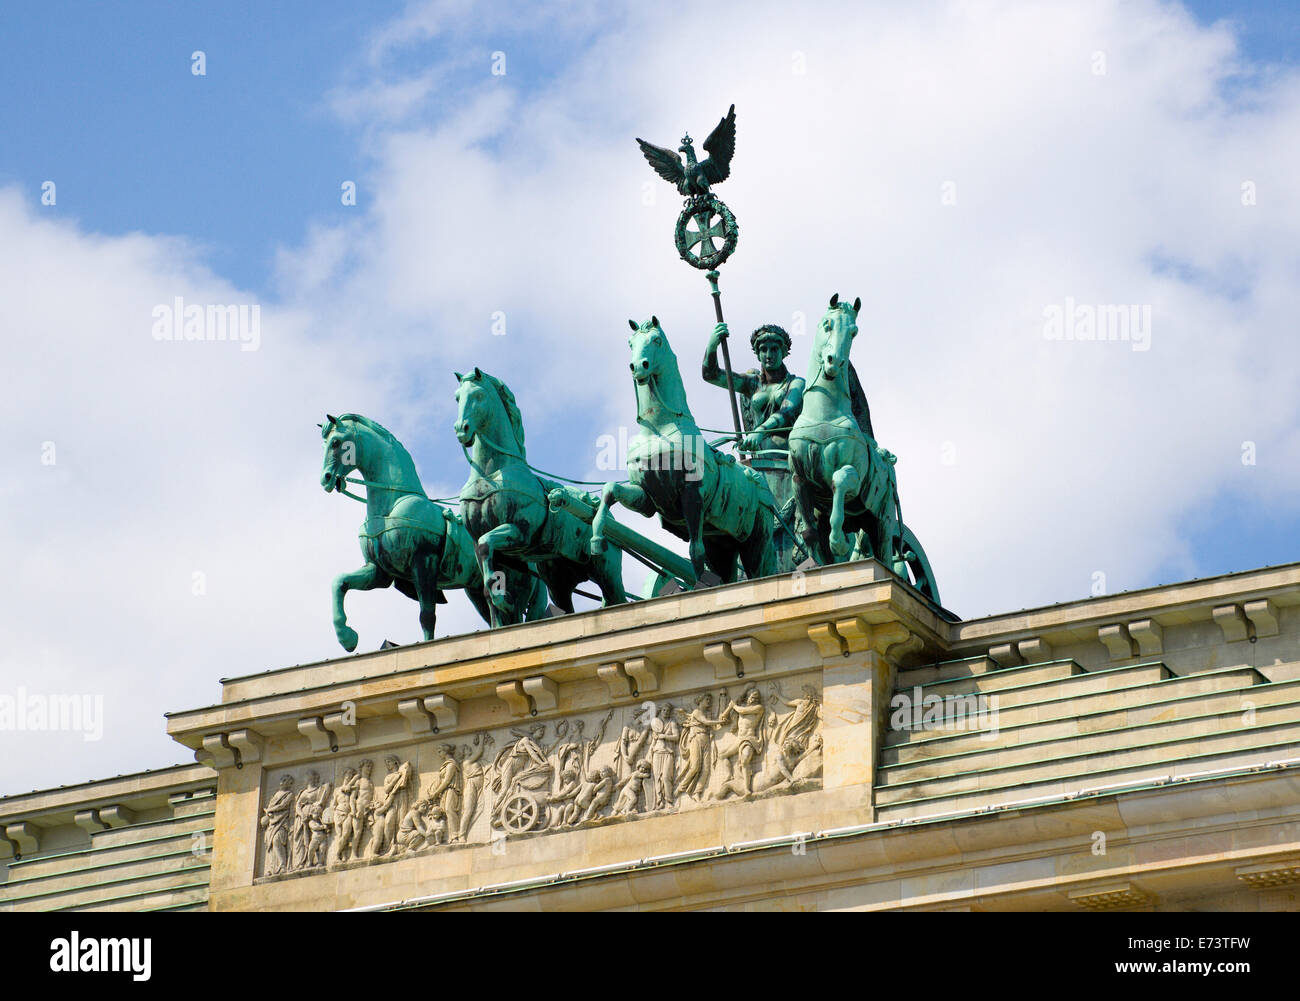 Germania, Berlino Mitte, la Porta di Brandeburgo o Brandenburger Tor in Pariser Platz che conduce al viale Unter den Linden e i palazzi reali Foto Stock